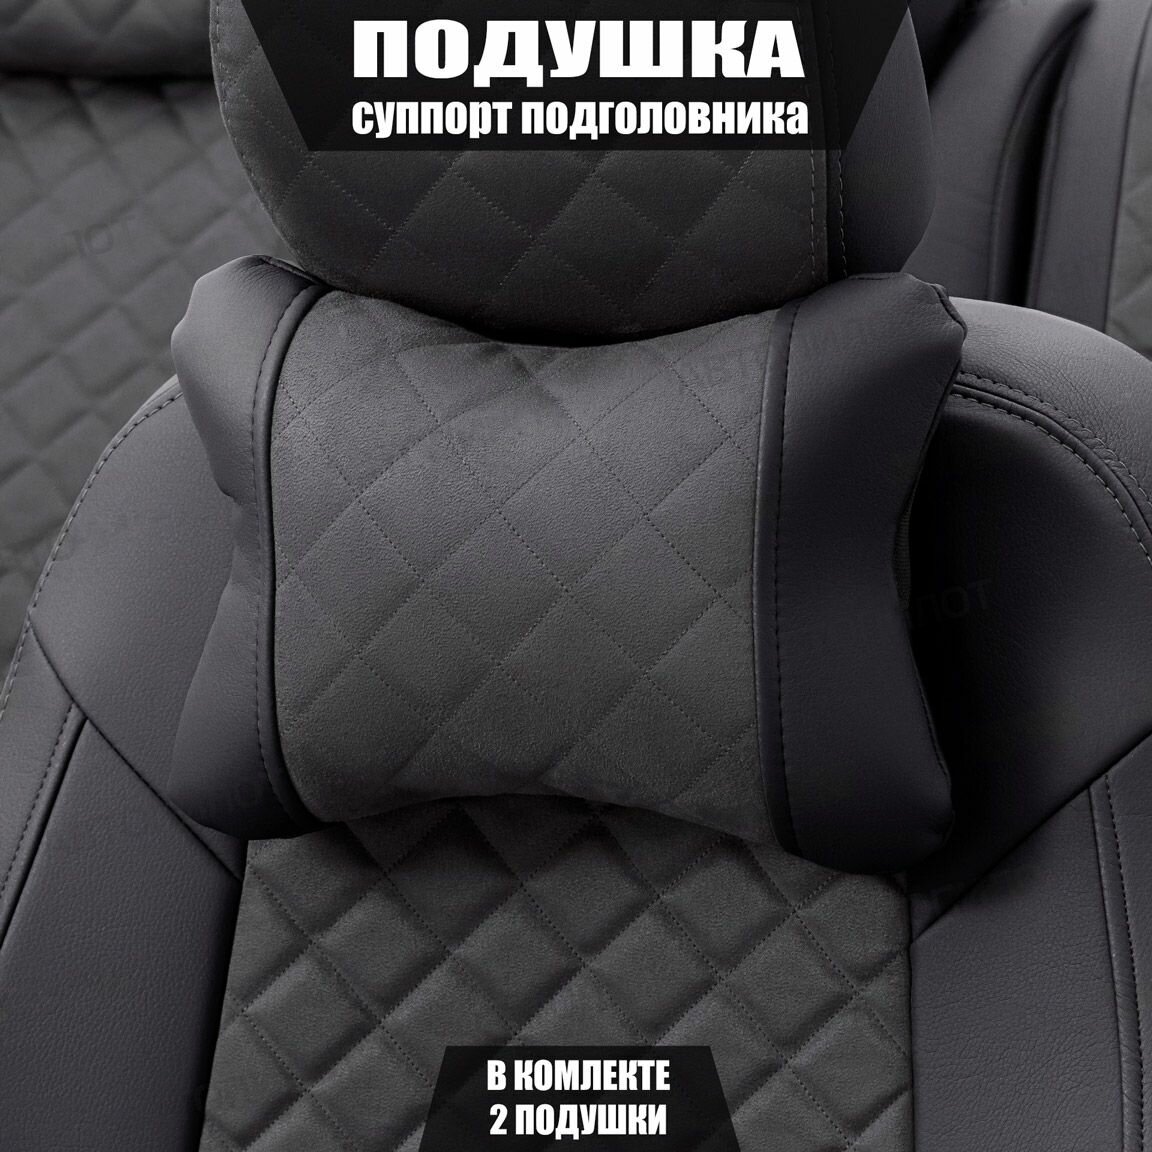 Подушки под шею (суппорт подголовника) для Пежо 208 (2012 - 2015) хэтчбек 3 двери / Peugeot 208 Ромб Алькантара 2 подушки Черный